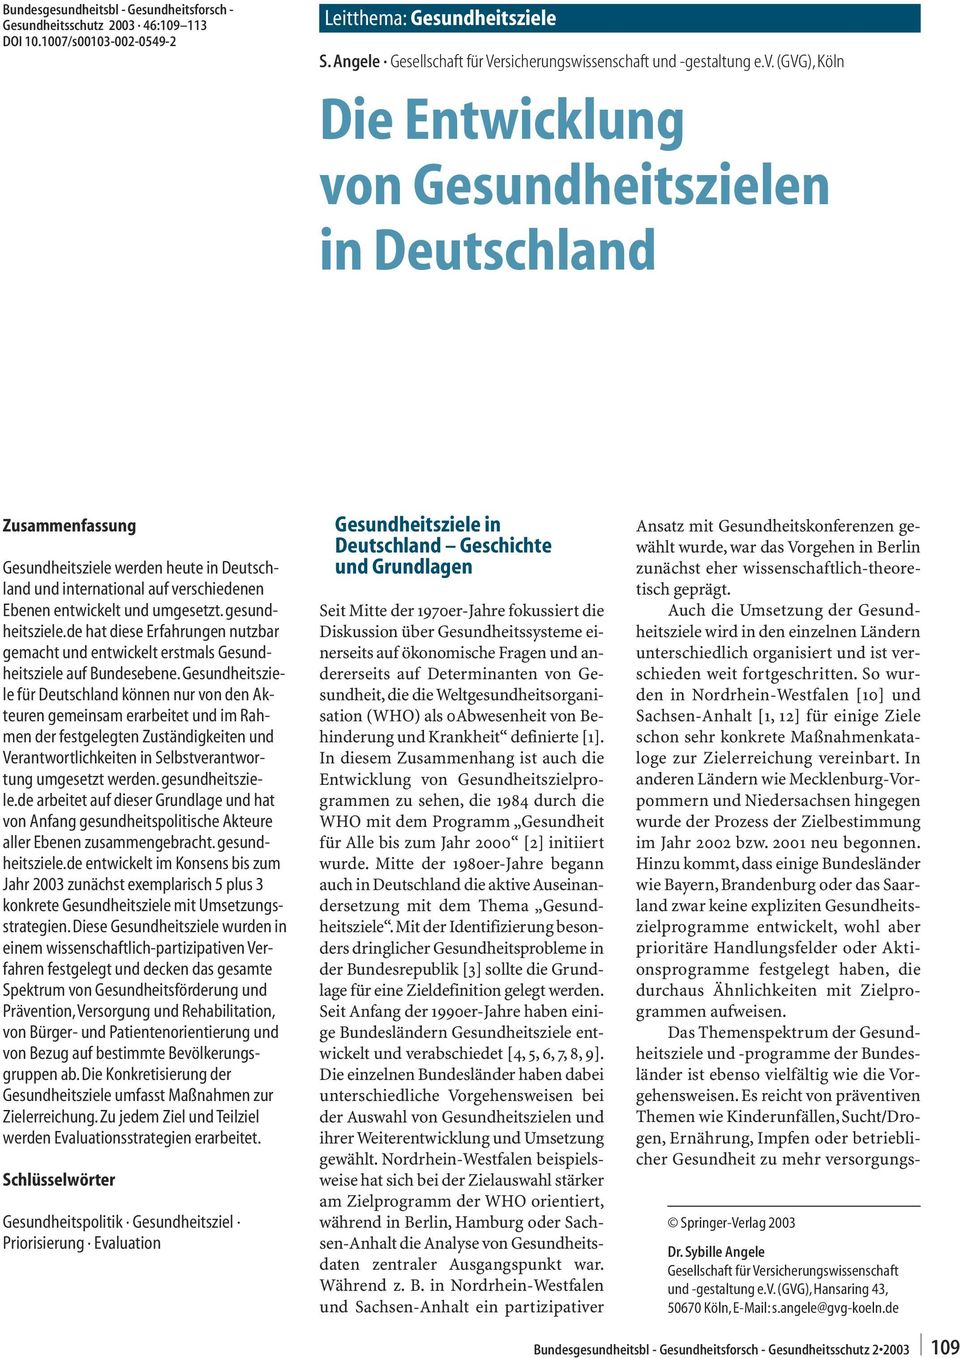 (gvg), Köln Die Entwicklung von Gesundheitszielen in Deutschland Zusammenfassung Gesundheitsziele werden heute in Deutschland und international auf verschiedenen Ebenen entwickelt und umgesetzt.